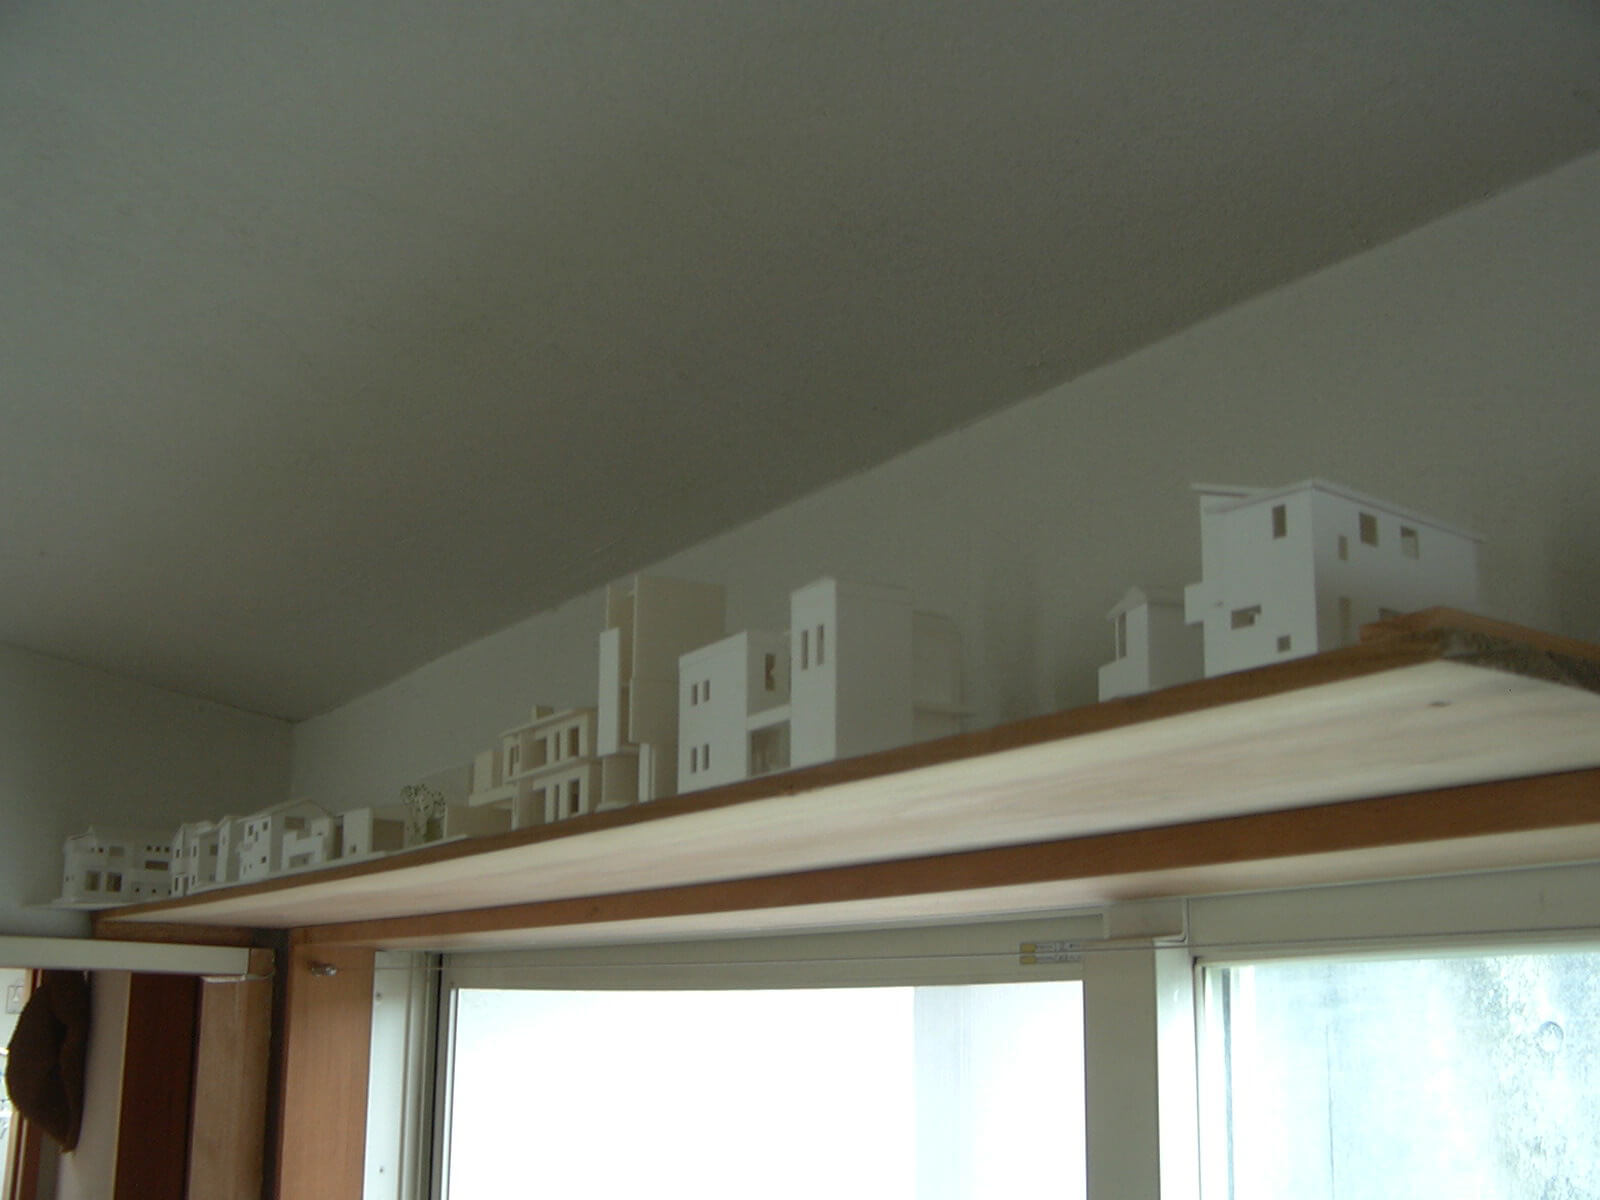 事務所入り口の上まで占領している住宅模型